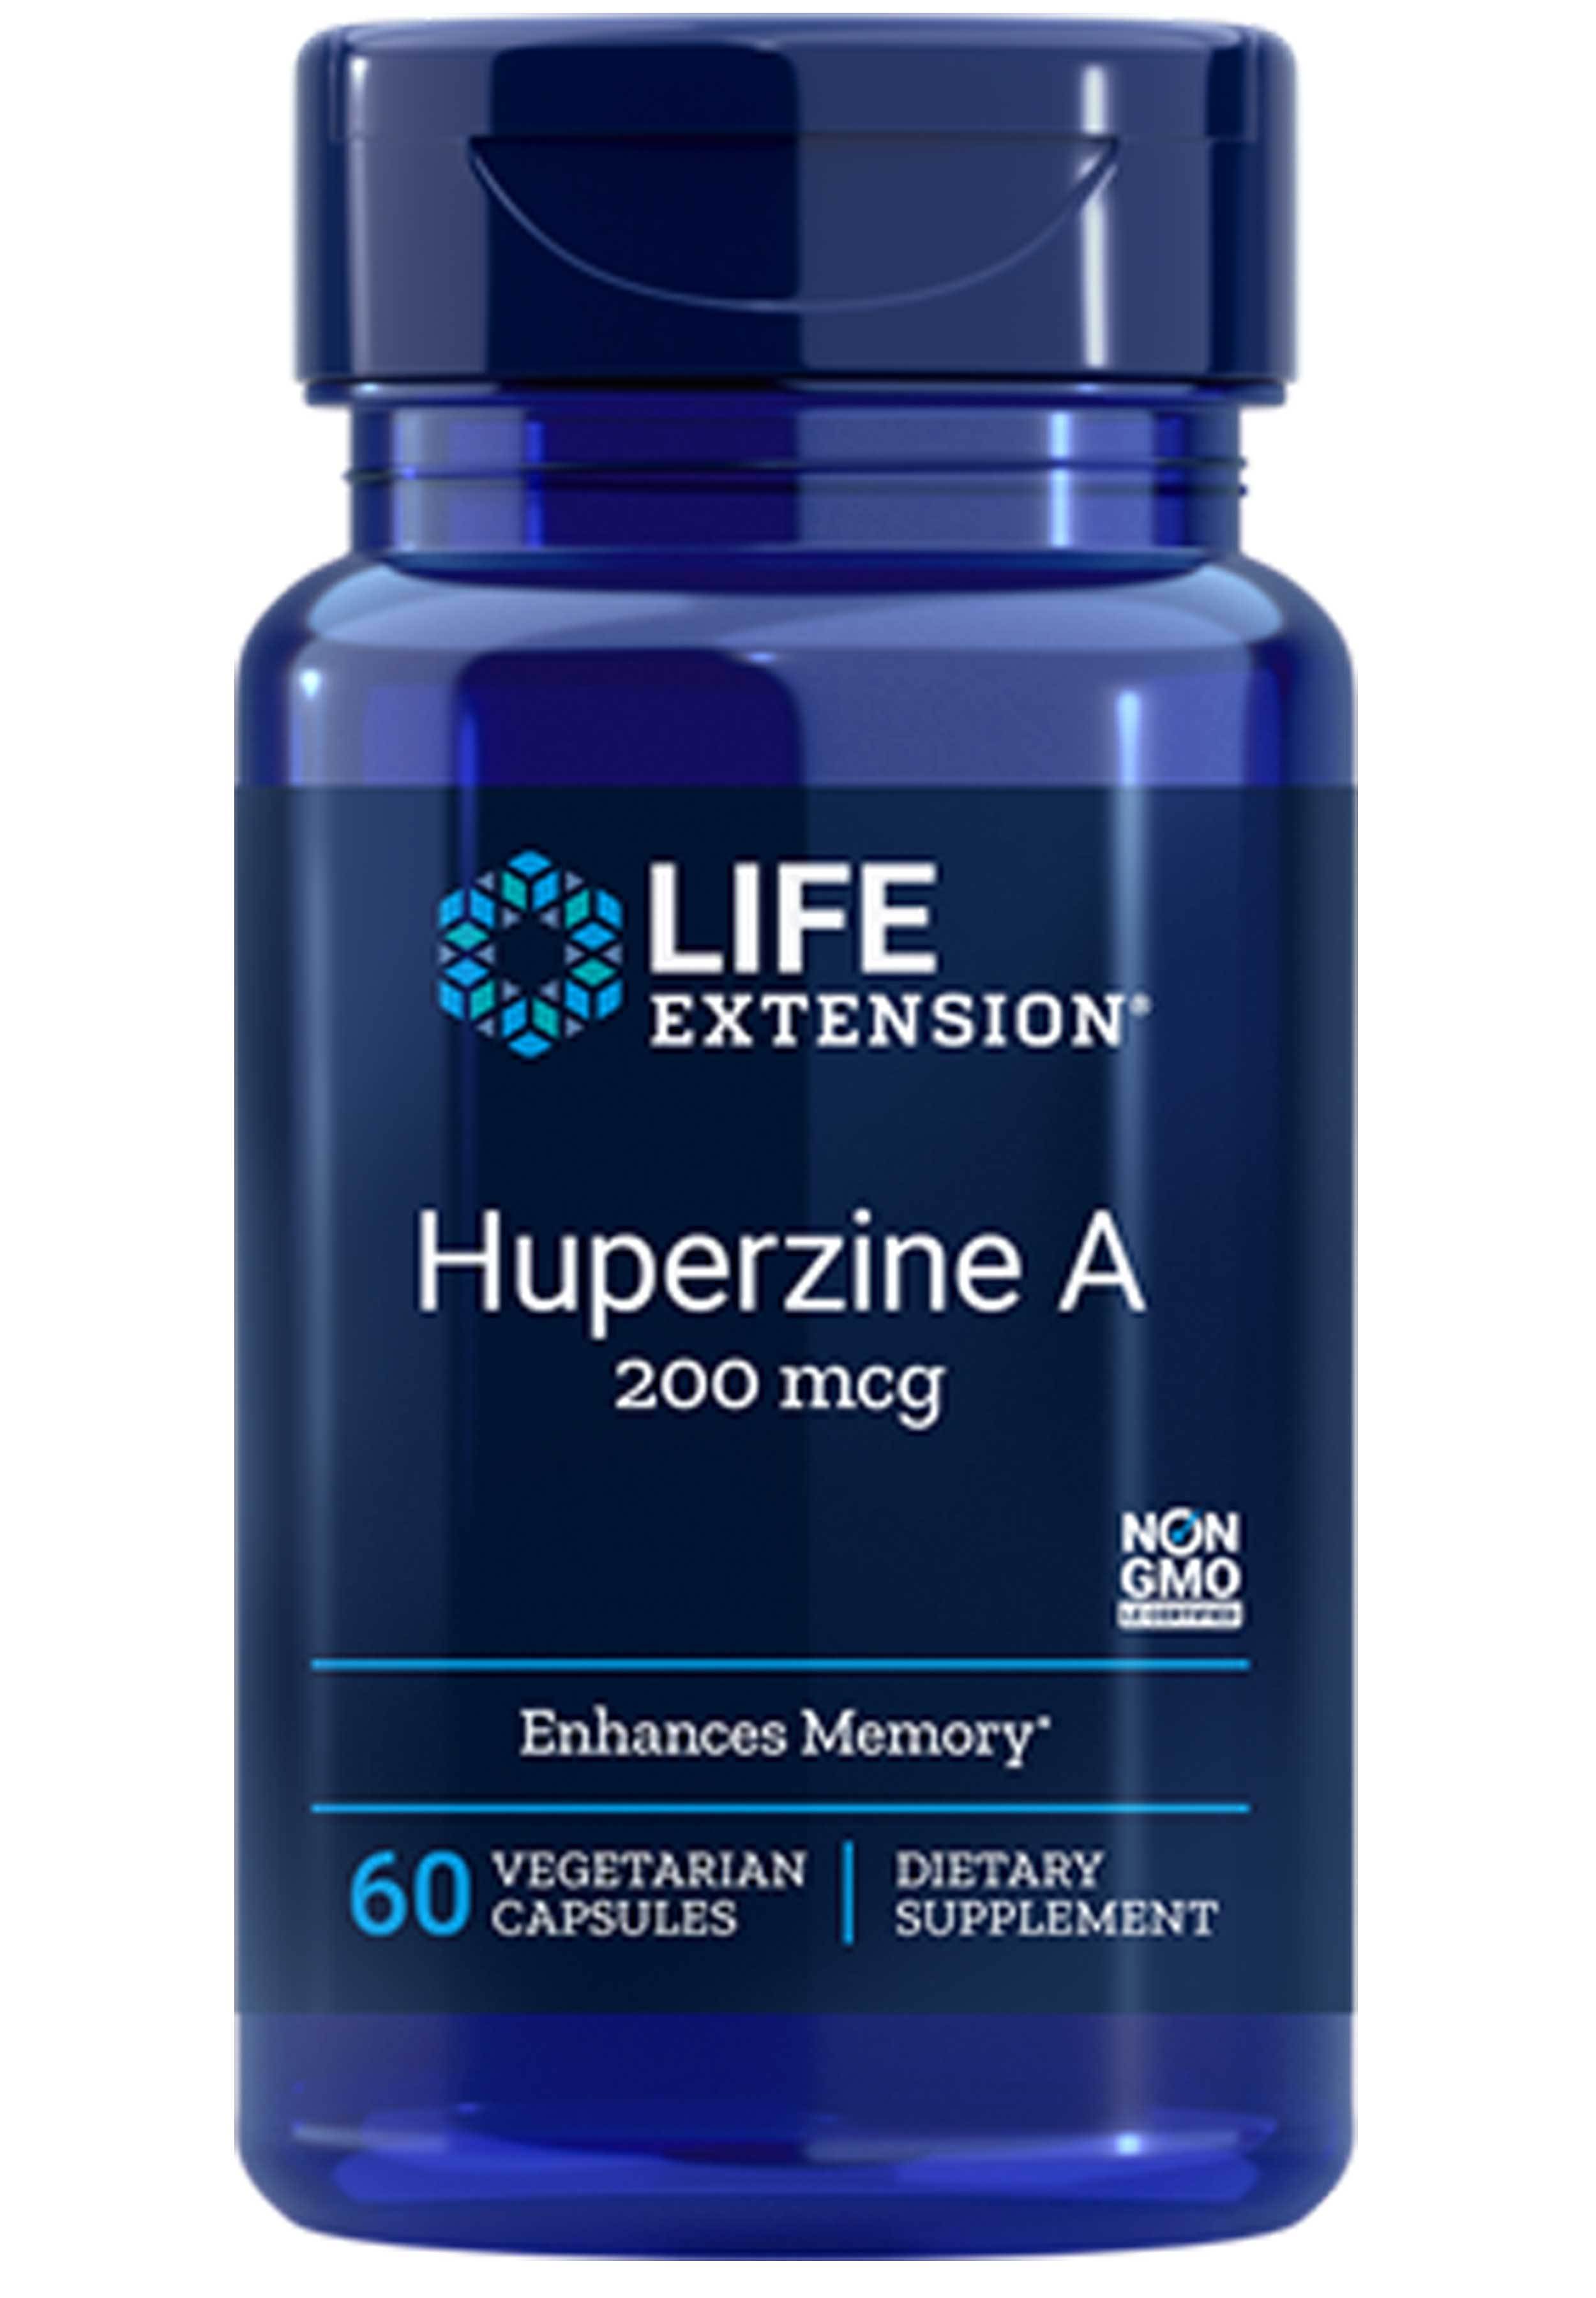 Life Extension Huperzine A